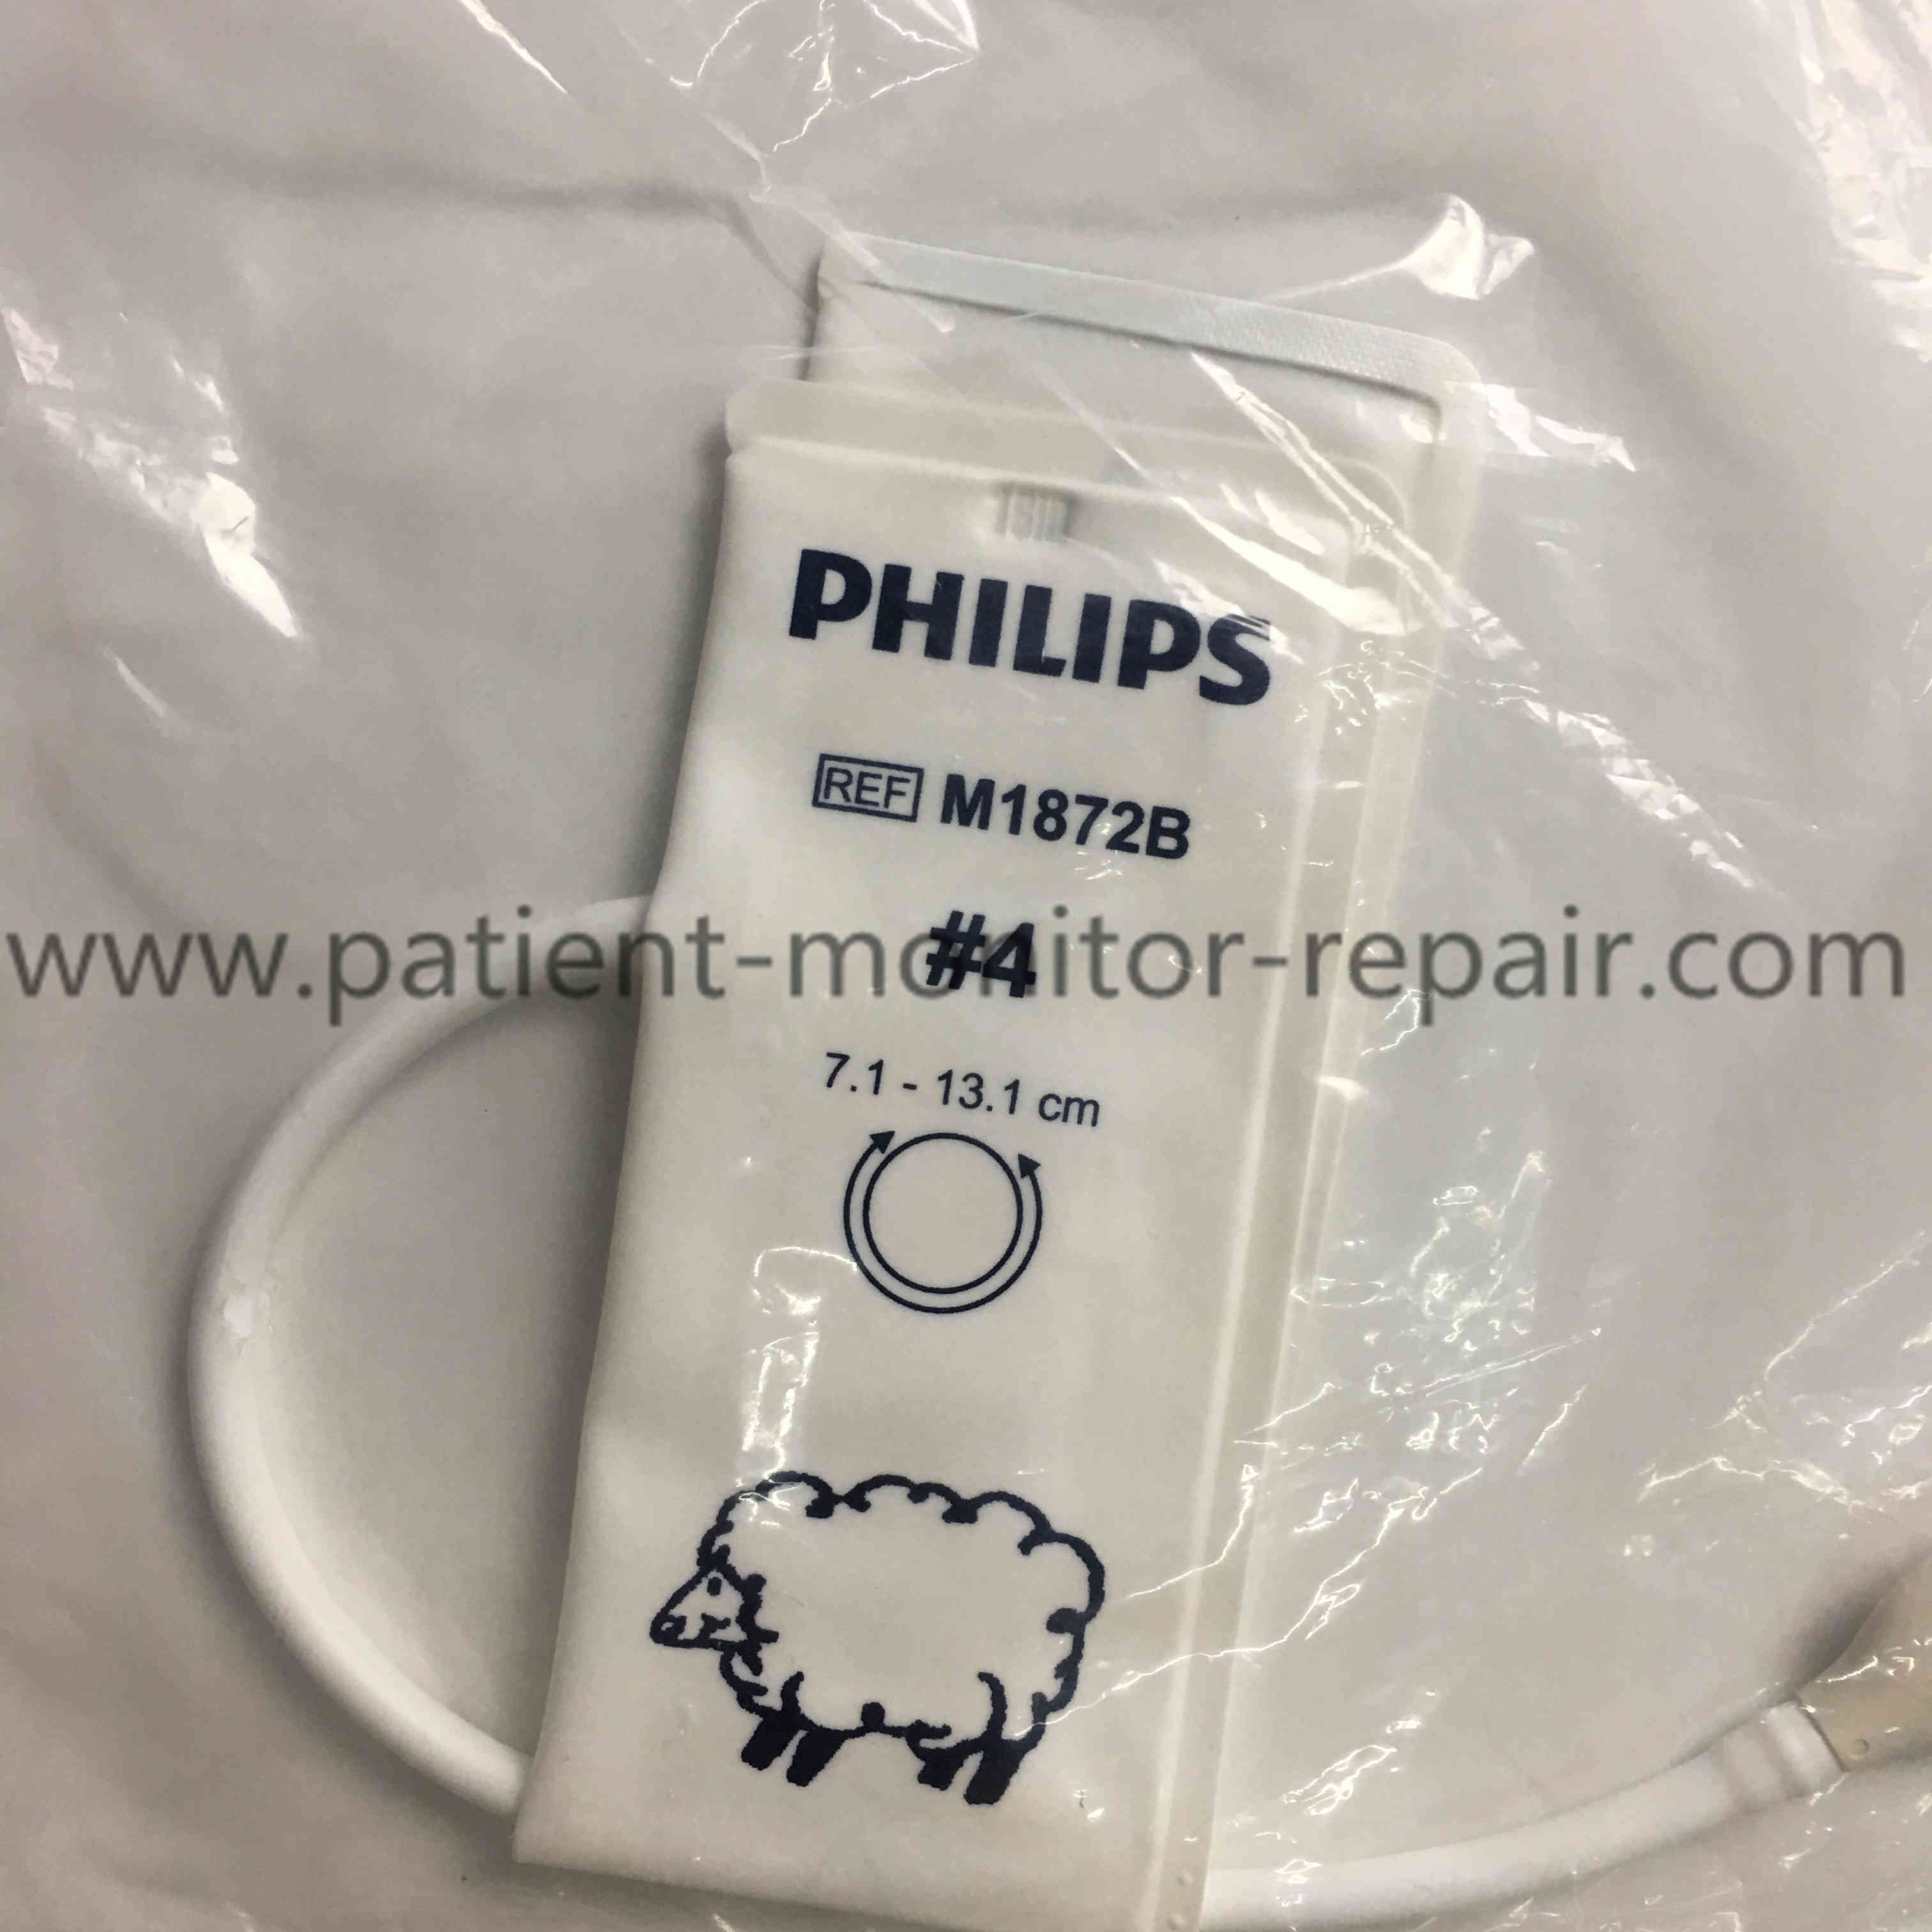 Philips M1872B NIBP Cuff Infant Single-patient Use, 7.1-13.1cm, Size #4